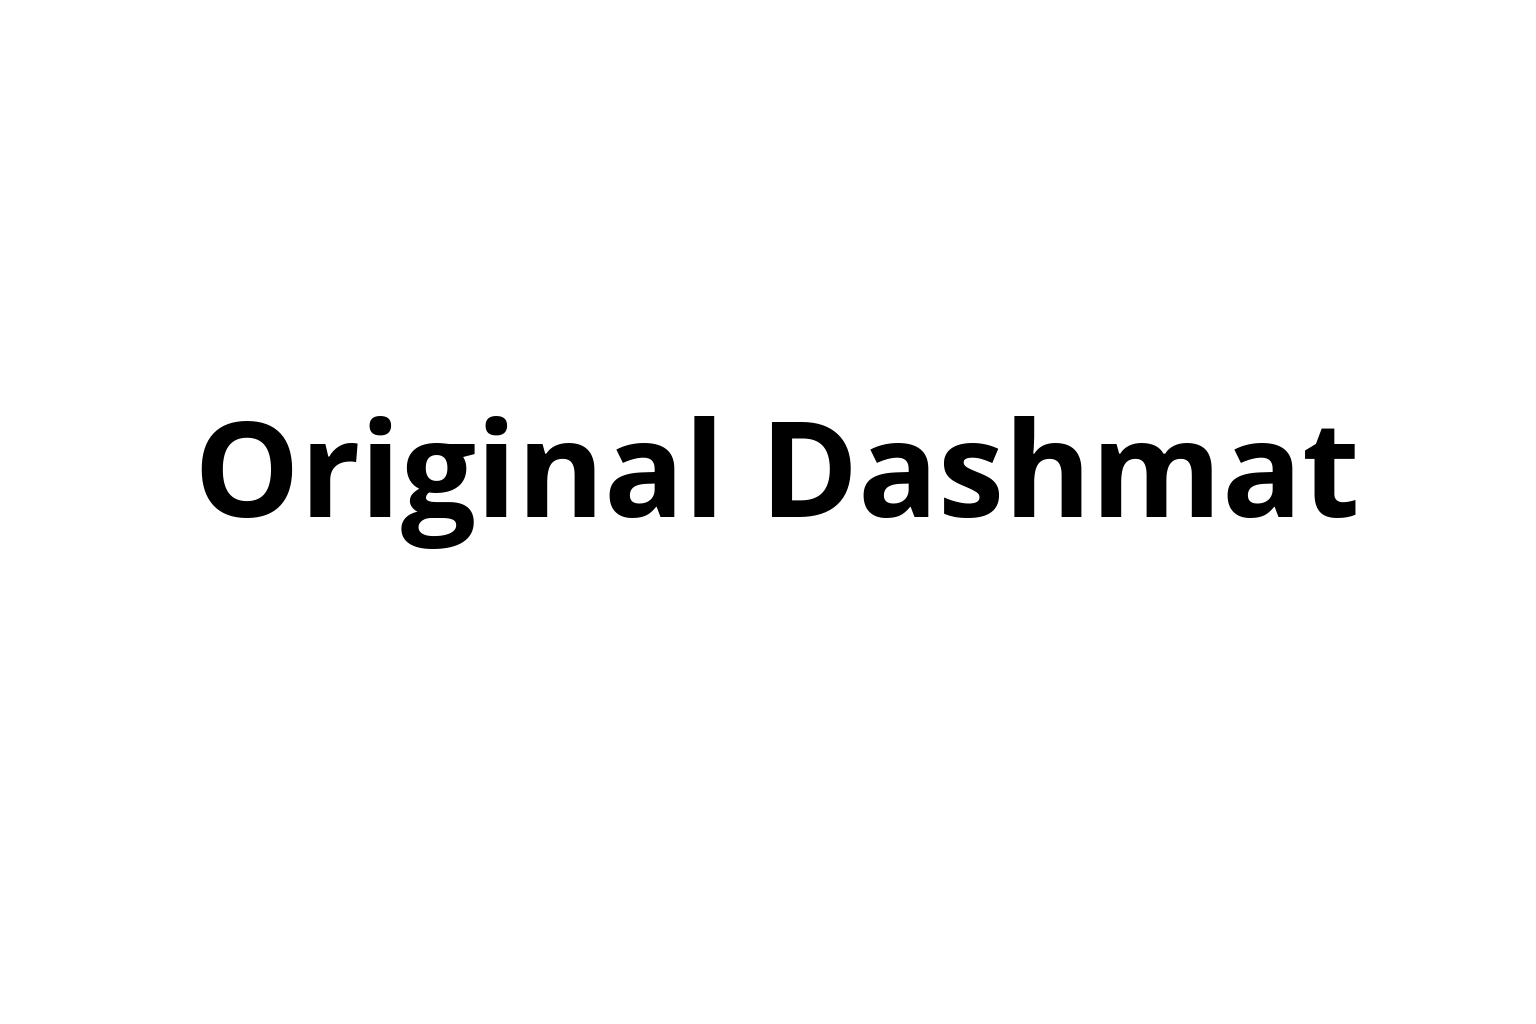 Original Dashmat